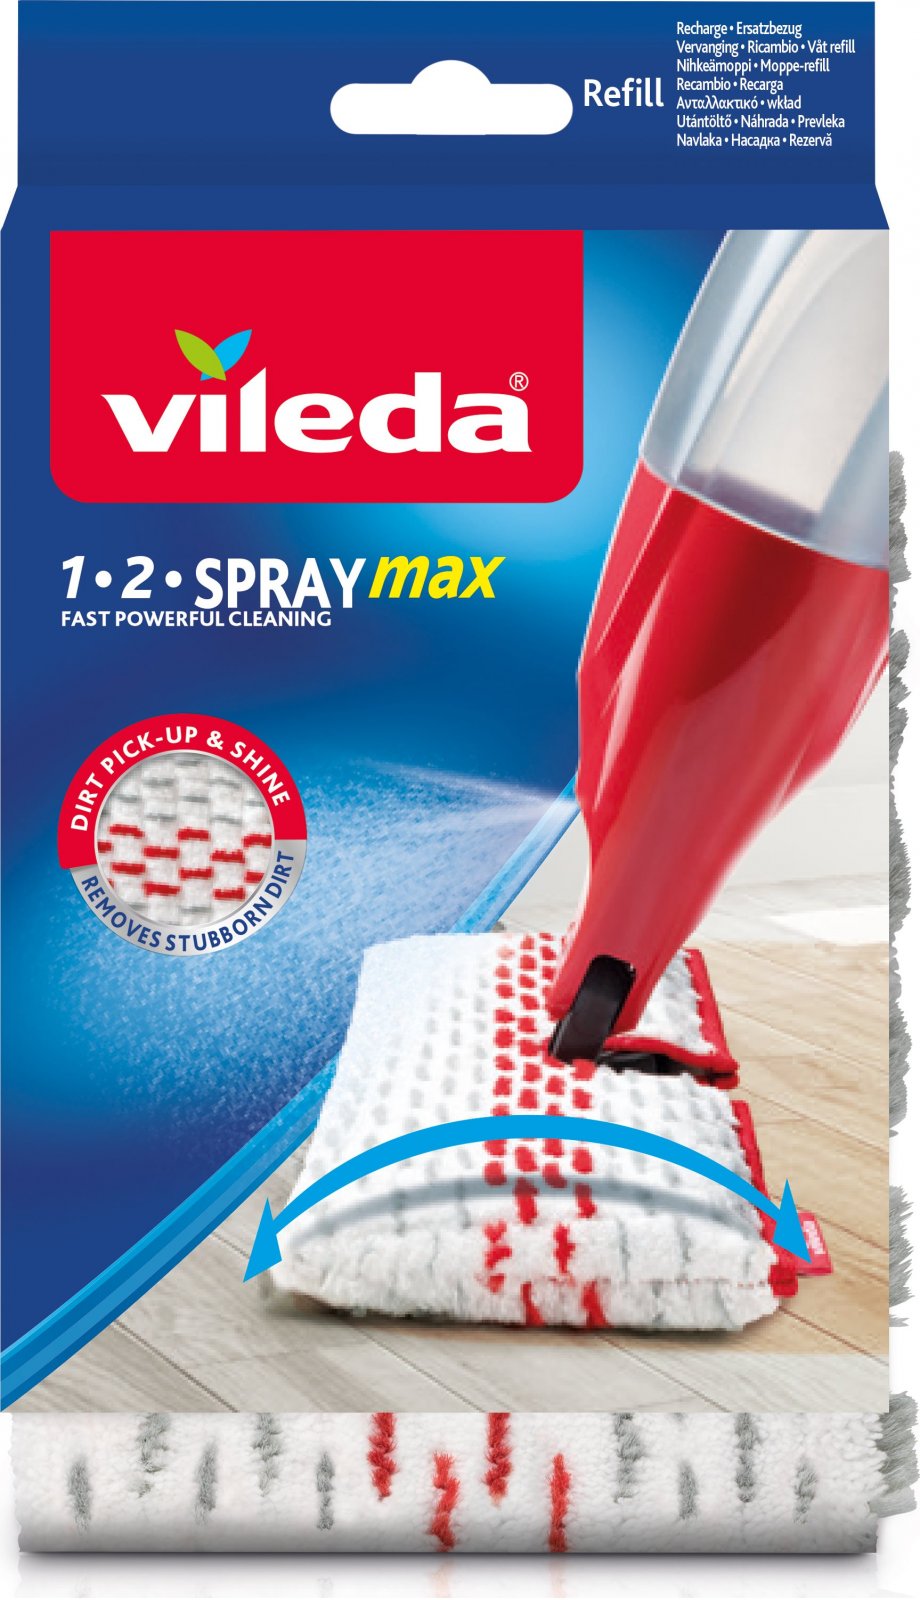 Spray 164016 od 1.2 náhrada 129 Kč Max Vileda